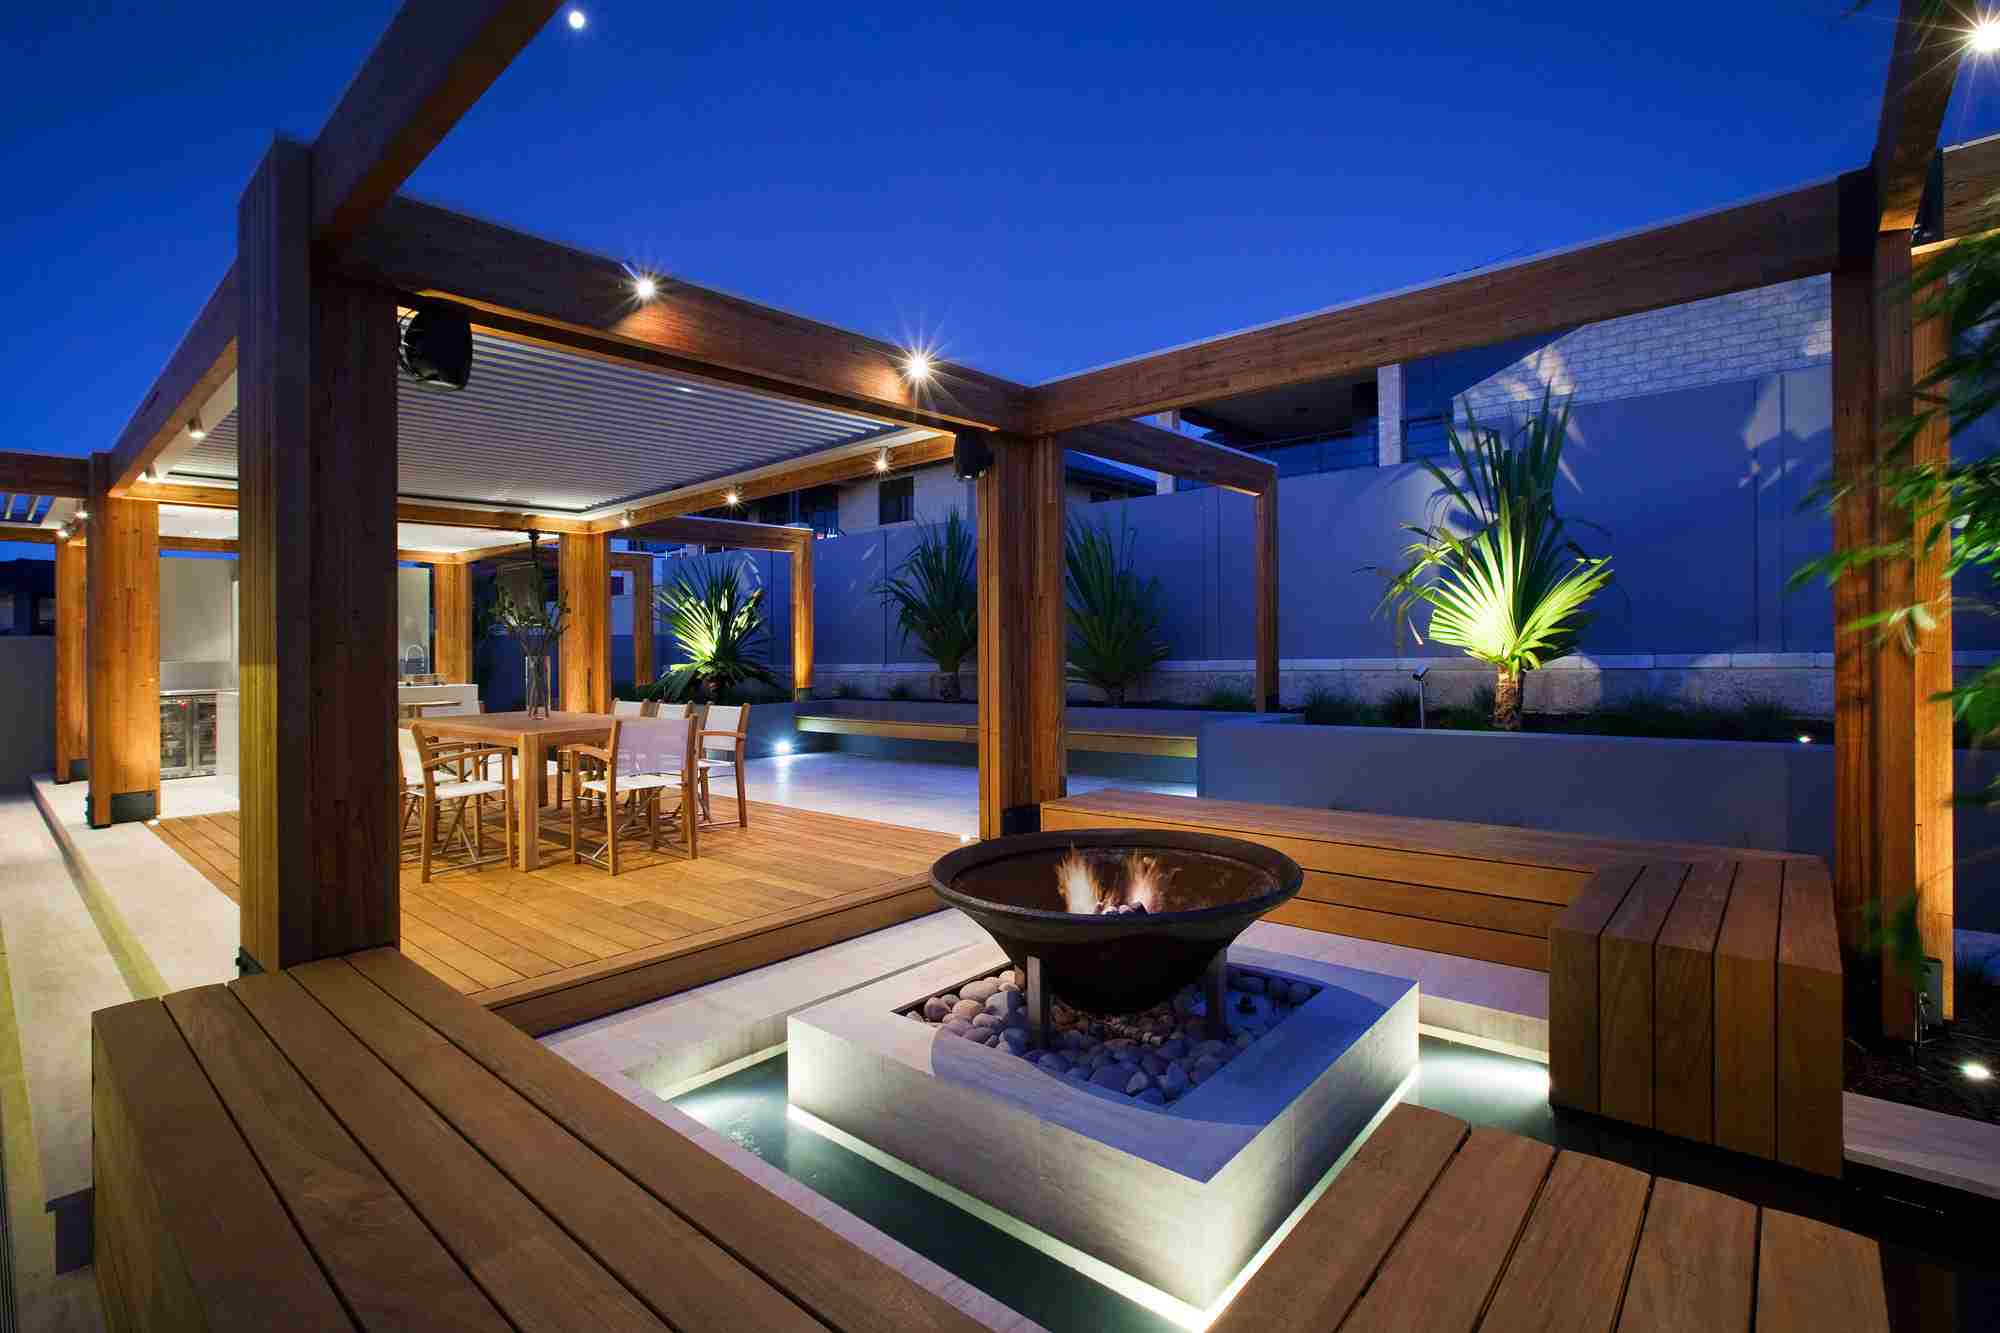 Garten und Terrasse Ideen modern Feuer Schwimmbad Holzmöbel Gartentrends